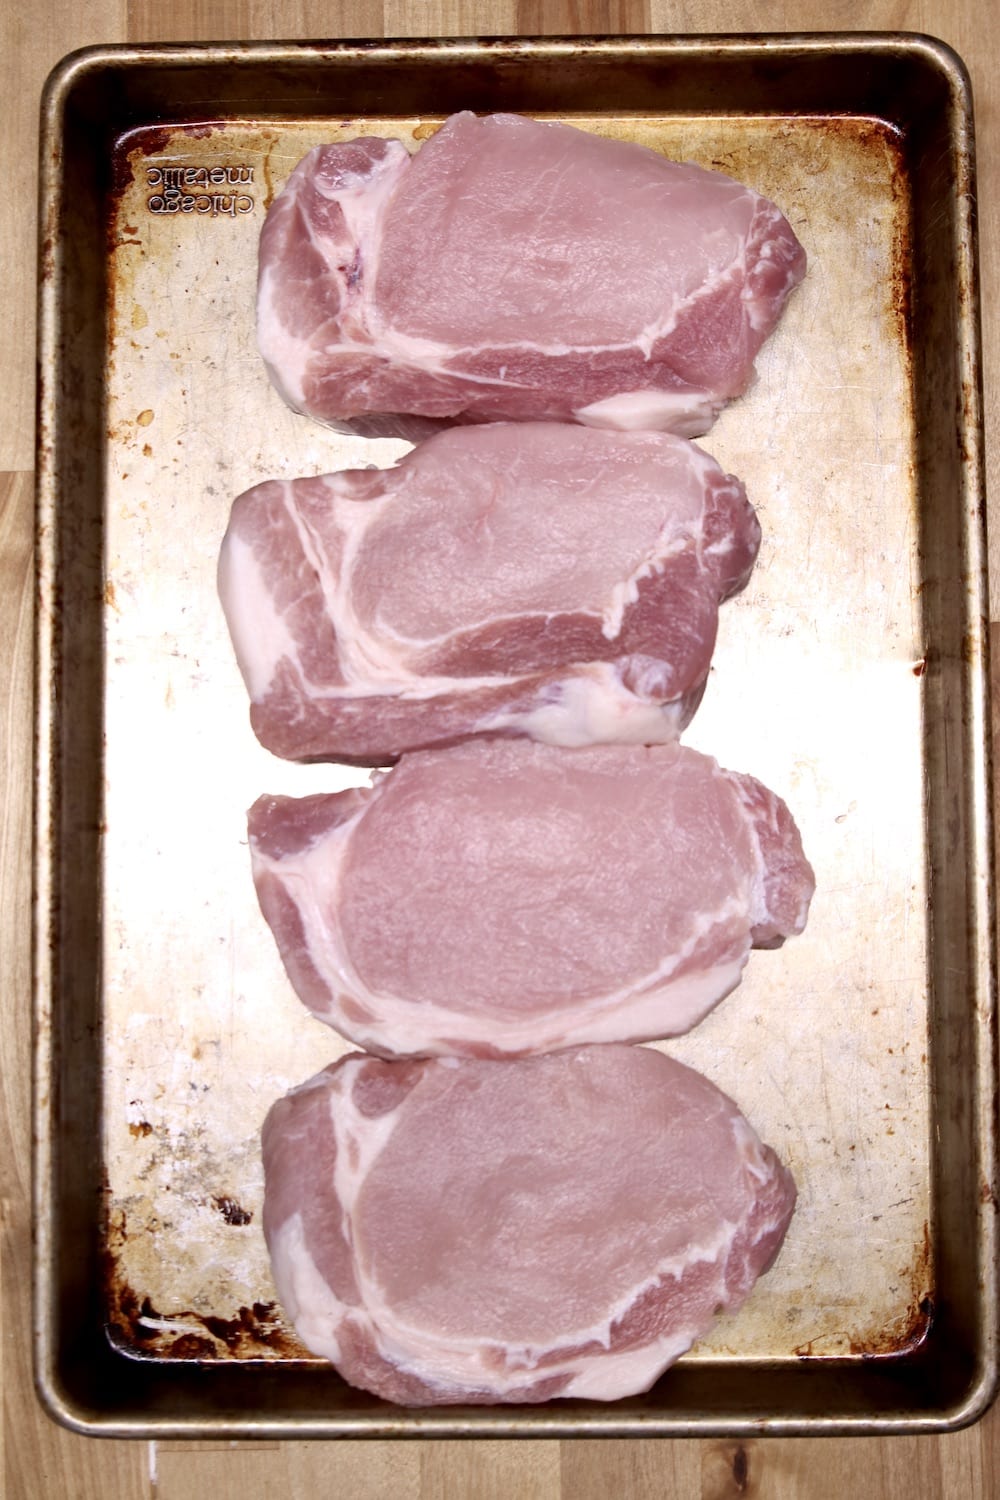 4 boneless pork chops on a sheet pan